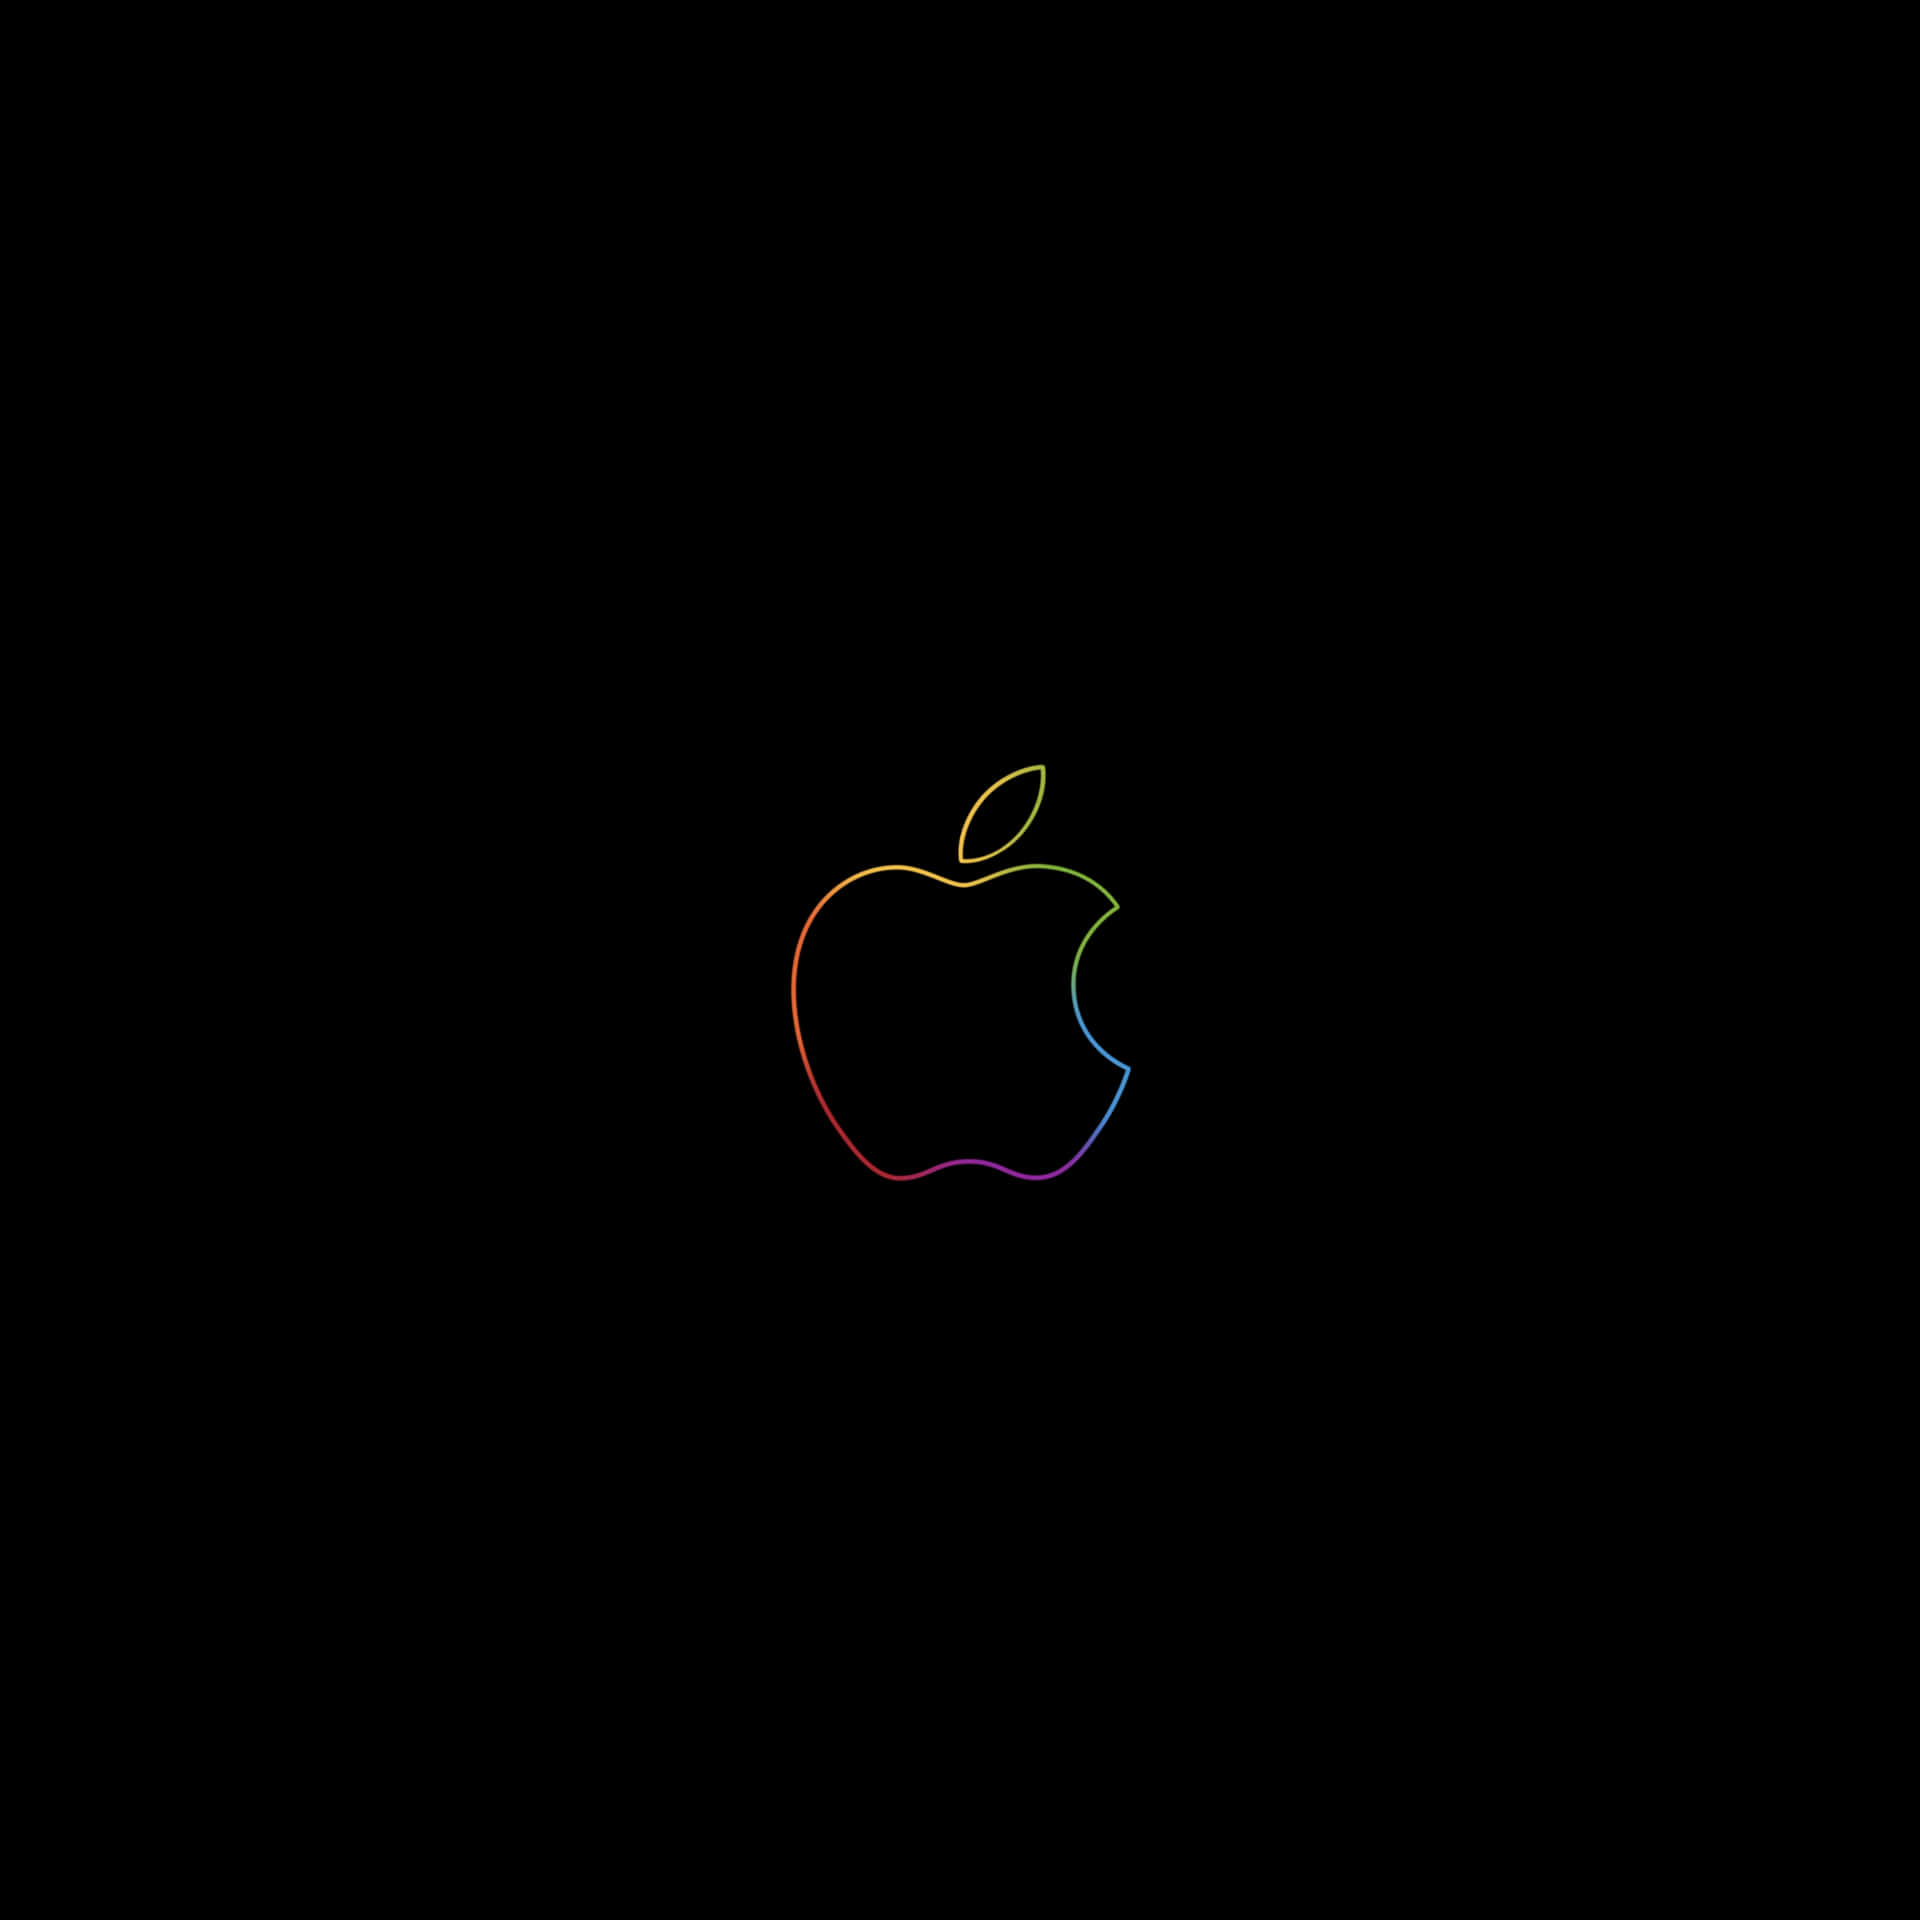 Logotipode Apple Negro Con Contorno Vibrante Fondo de pantalla